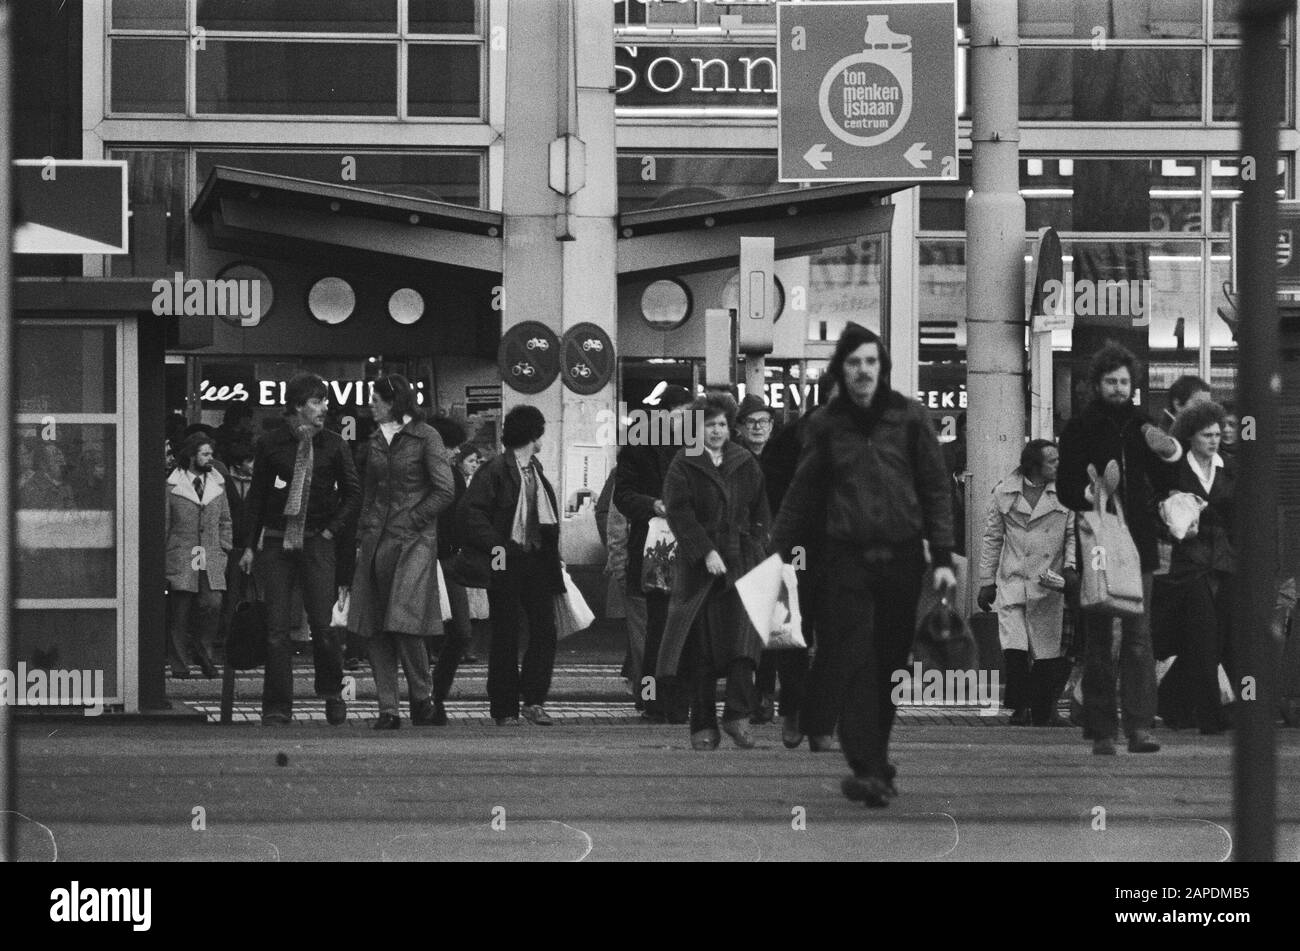 Acciones de la administración pública; transporte público en el piso de Rotterdam, personas caminan hasta el trabajo Fecha: 6 de diciembre de 1978 ubicación: Rotterdam, Zuid-Holland palabras clave: Funcionarios, huelgas Foto de stock